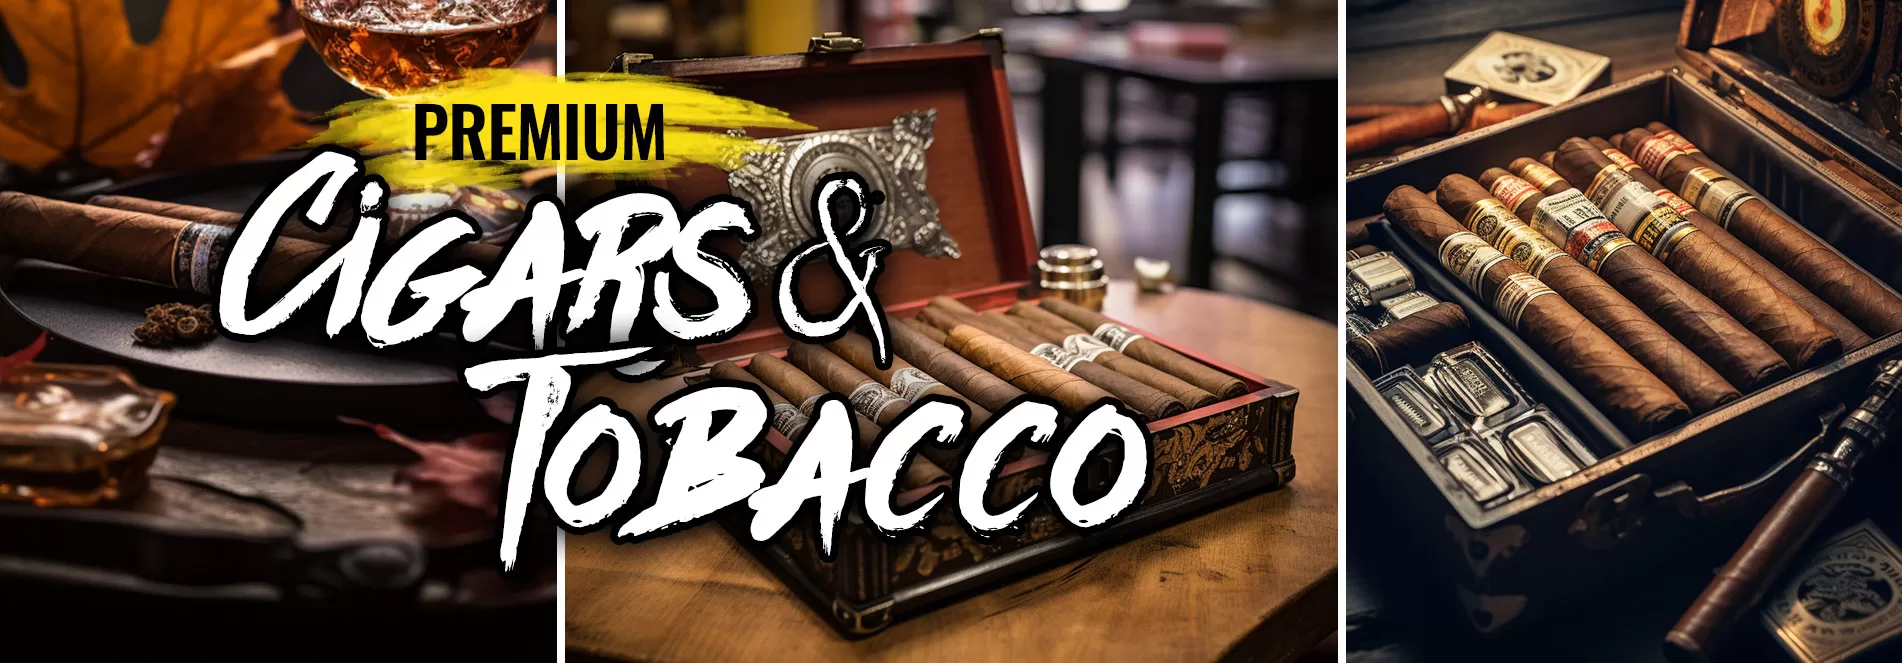 Premium Cigars & Tobacco